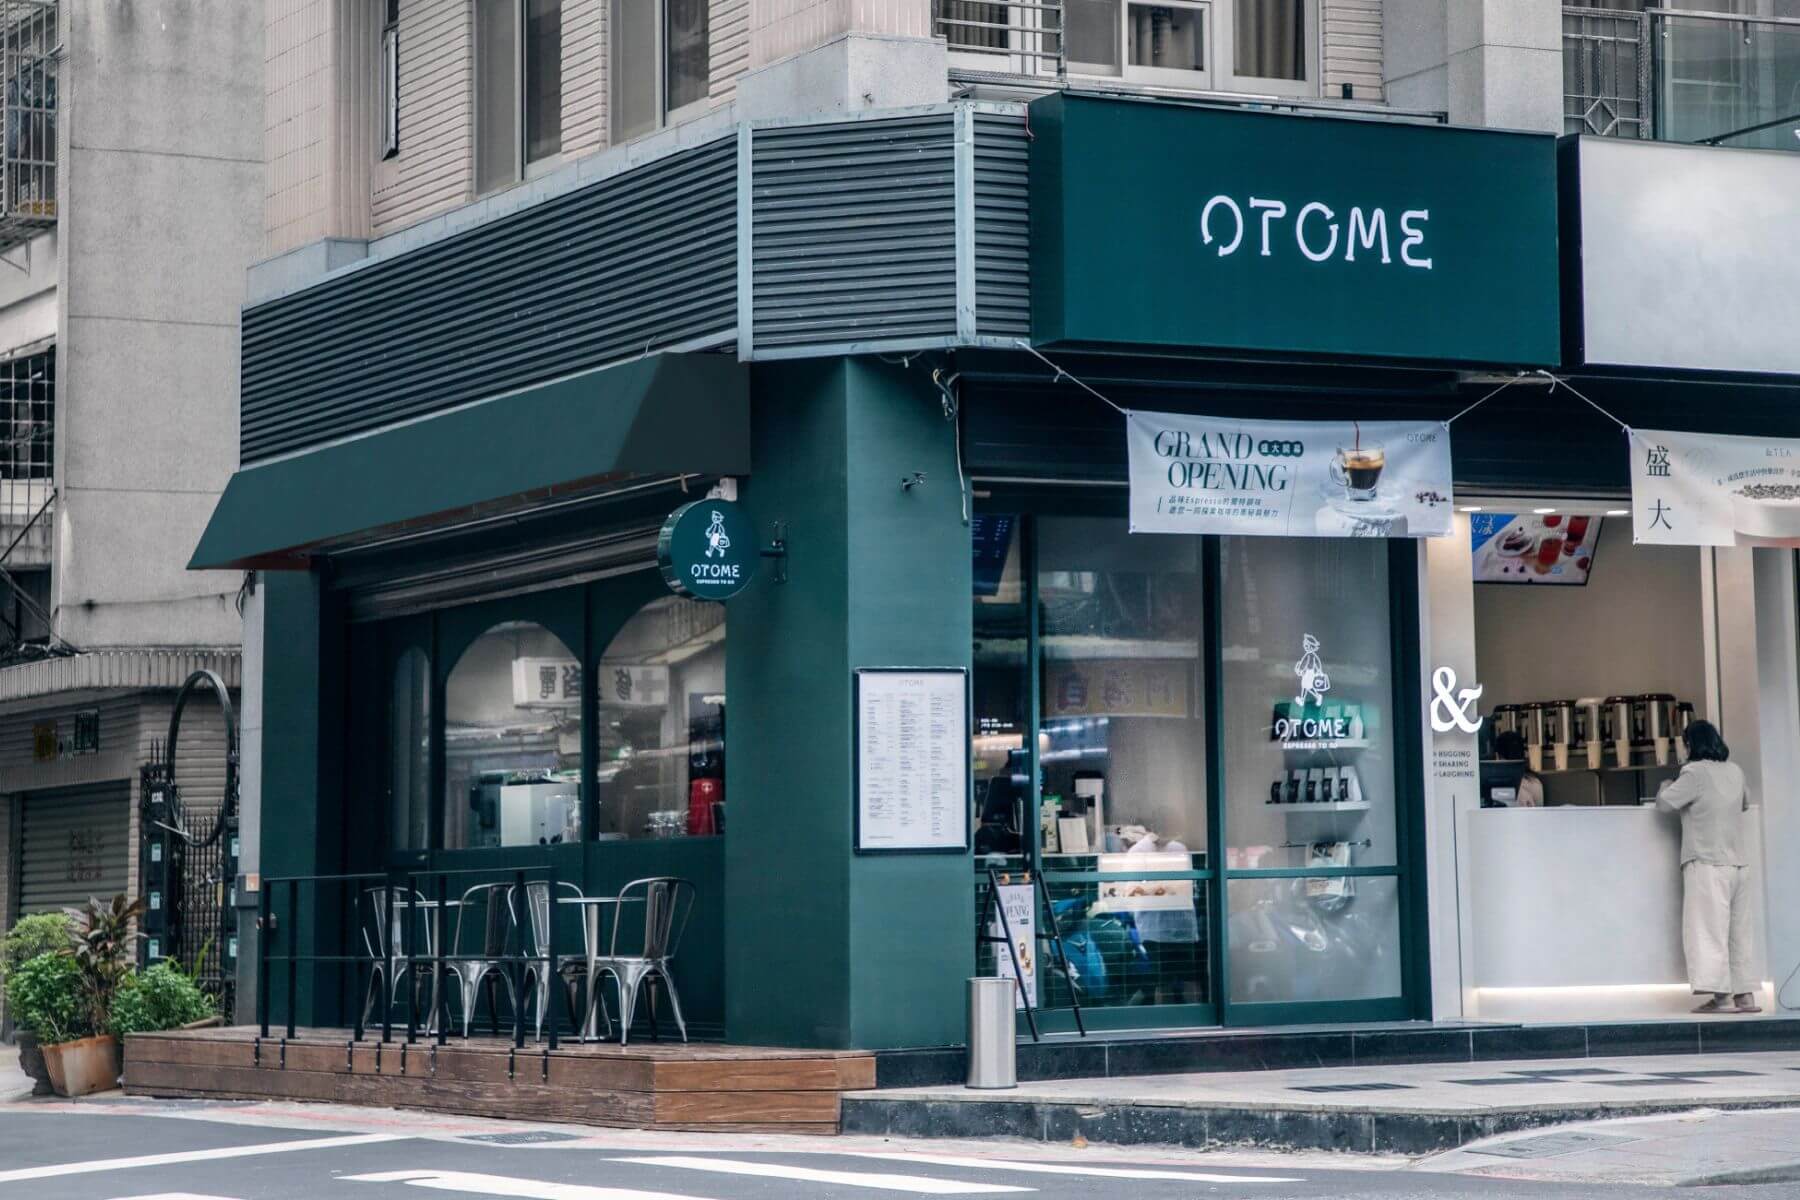 OTOME Café 進駐伊通商圈，以新時代店型打造咖啡生活新提案